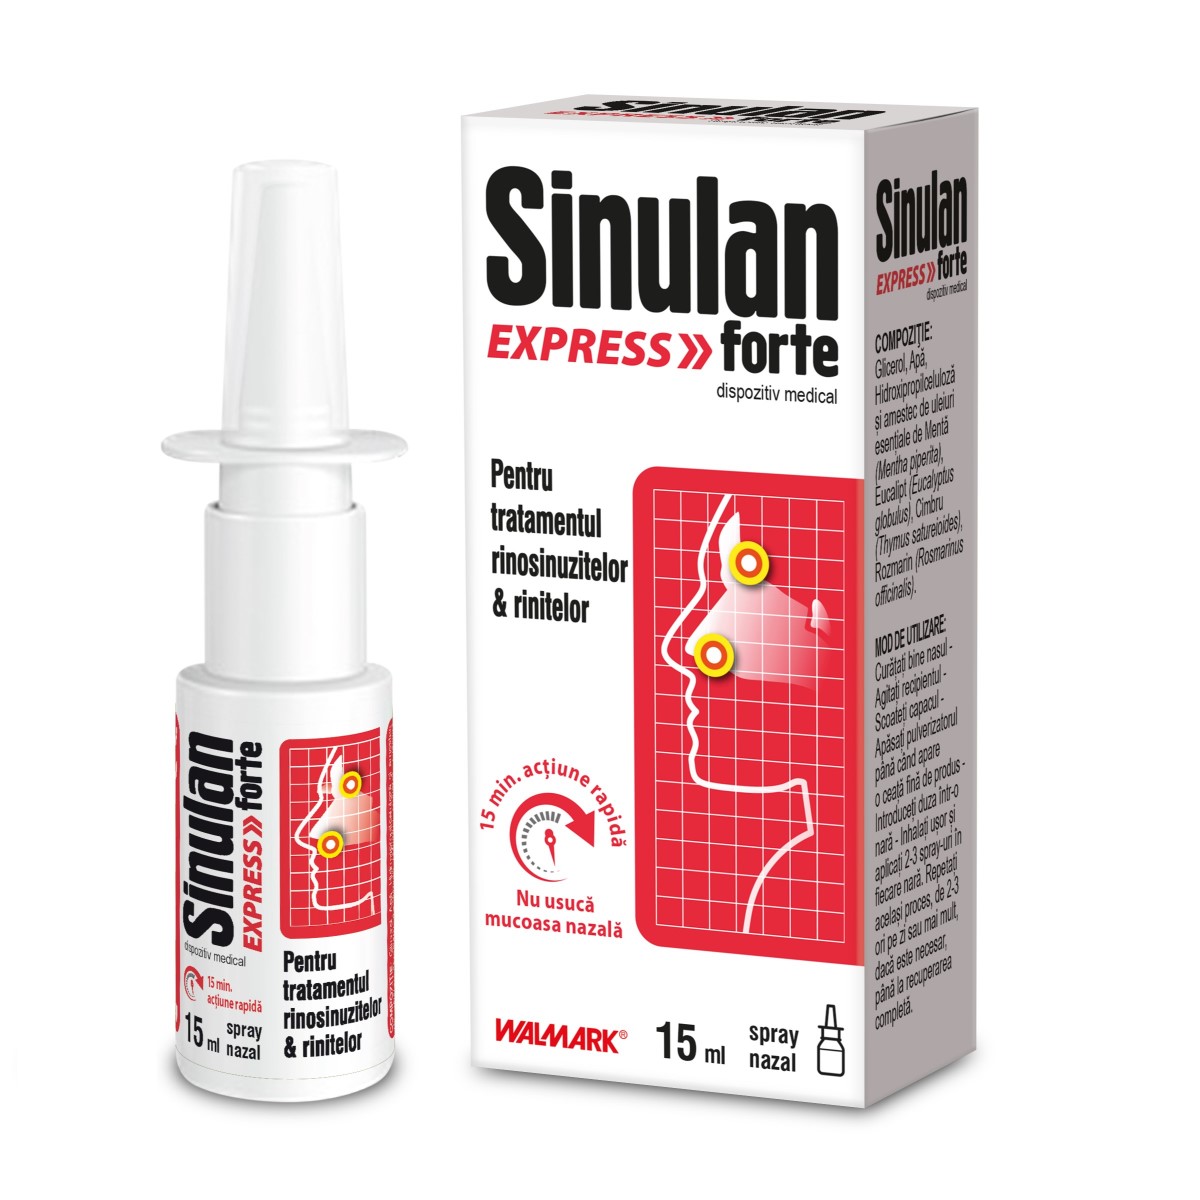 Solutii nazale - Sinulan Express forte spray nazal, 15 ml, Walmark, sinapis.ro